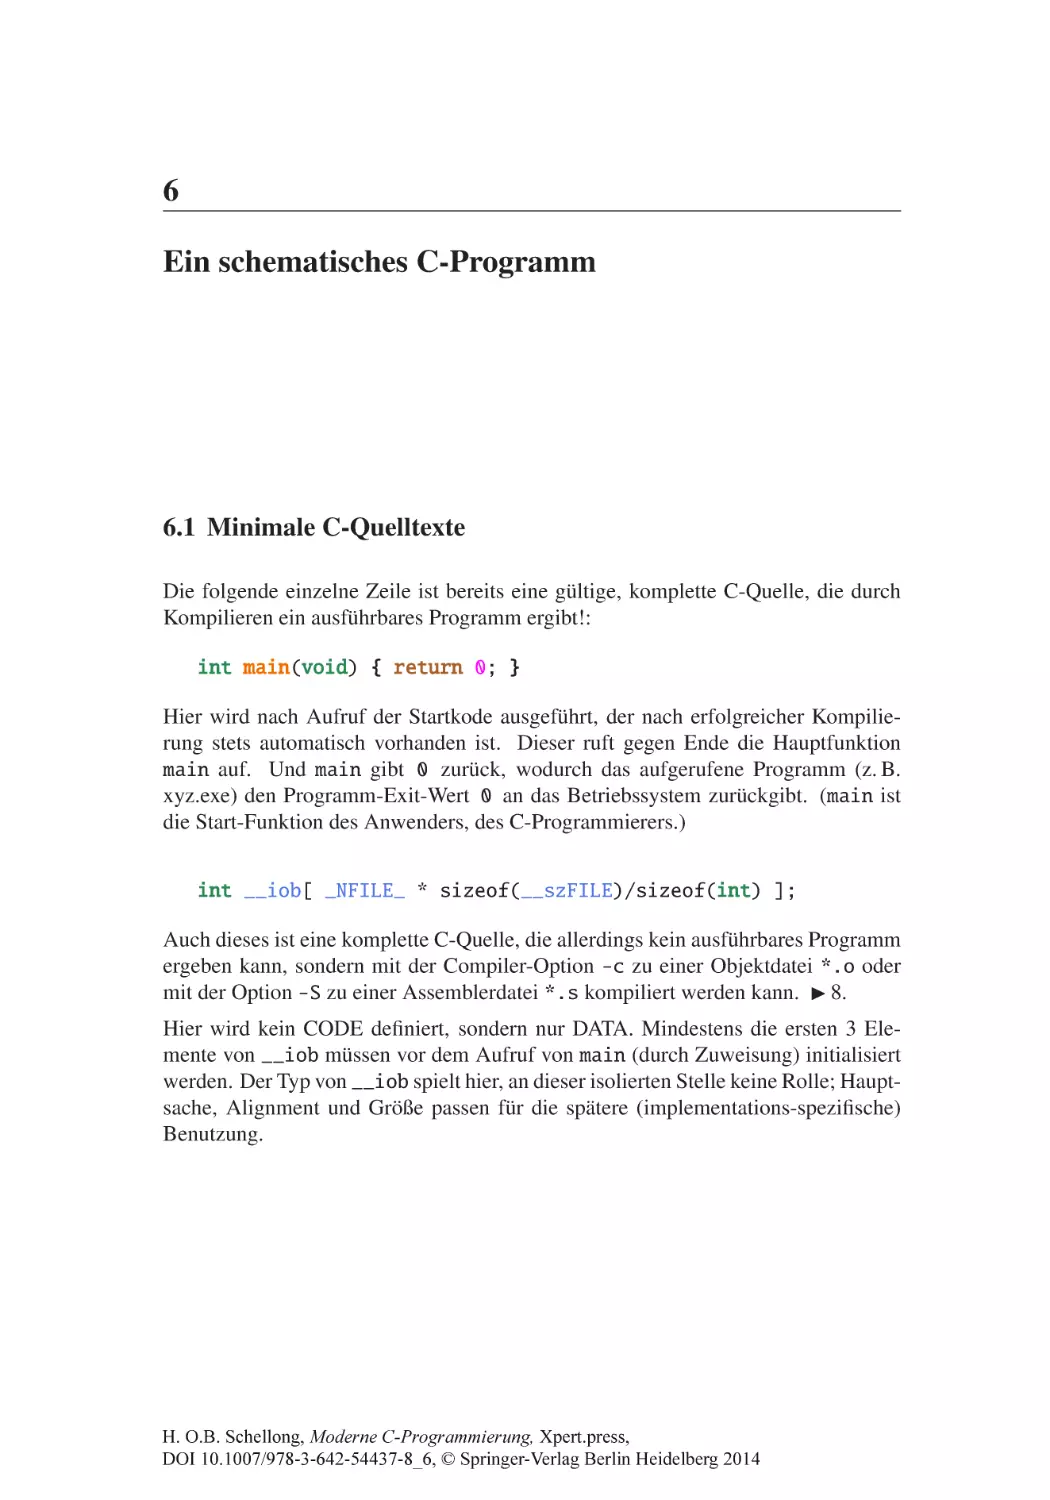 6 Ein schematisches C-Programm
6.1 Minimale C-Quelltexte